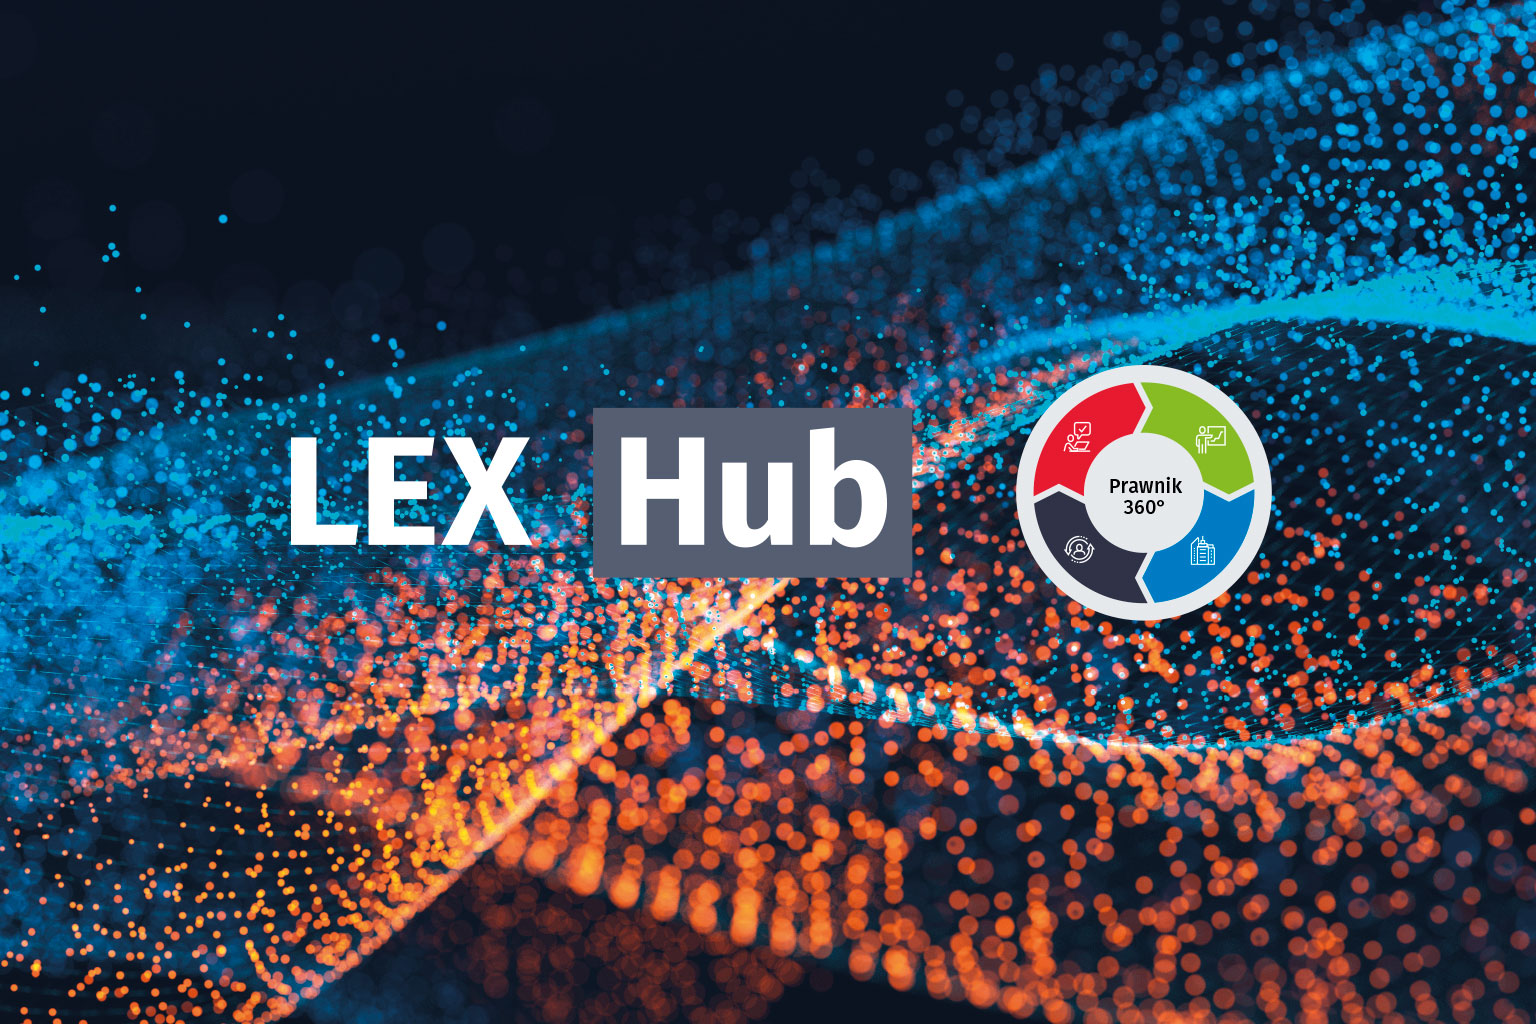 Poznajcie INPRO - nowego partnera LEX Hub!